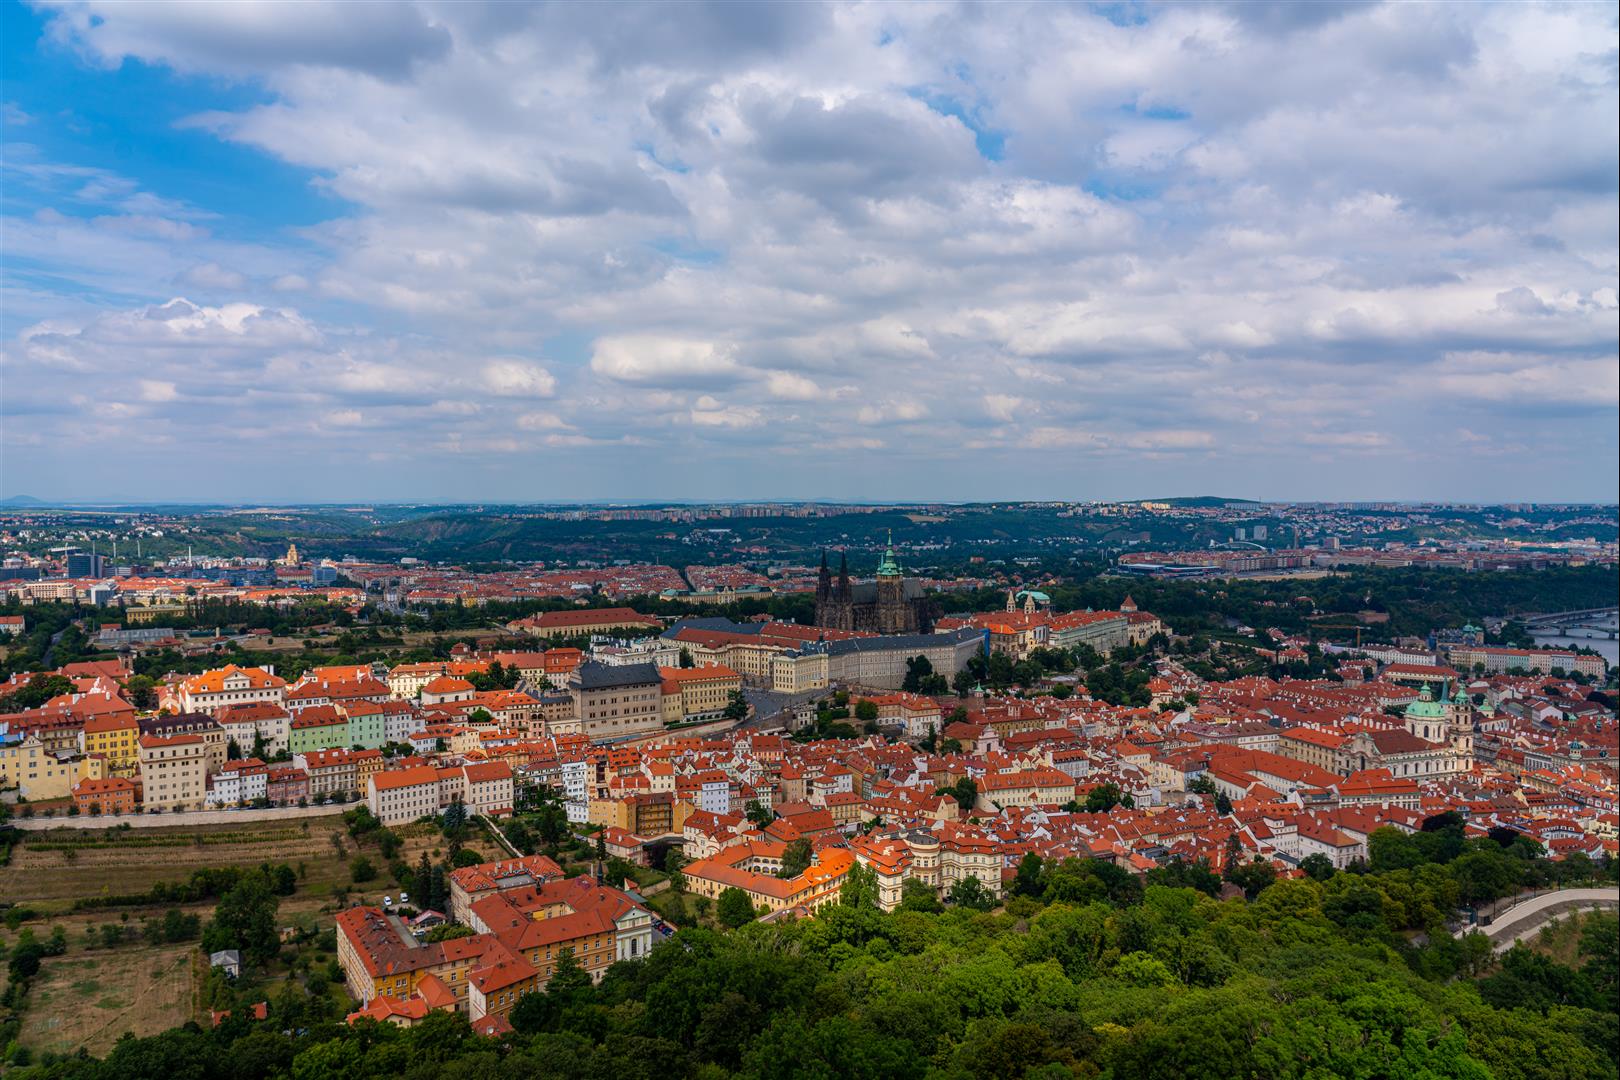 [2019 中歐攝影旅行] Day14 – 布拉格、佩特任山丘、斯特拉霍夫修道院圖書館、佩特任瞭望台